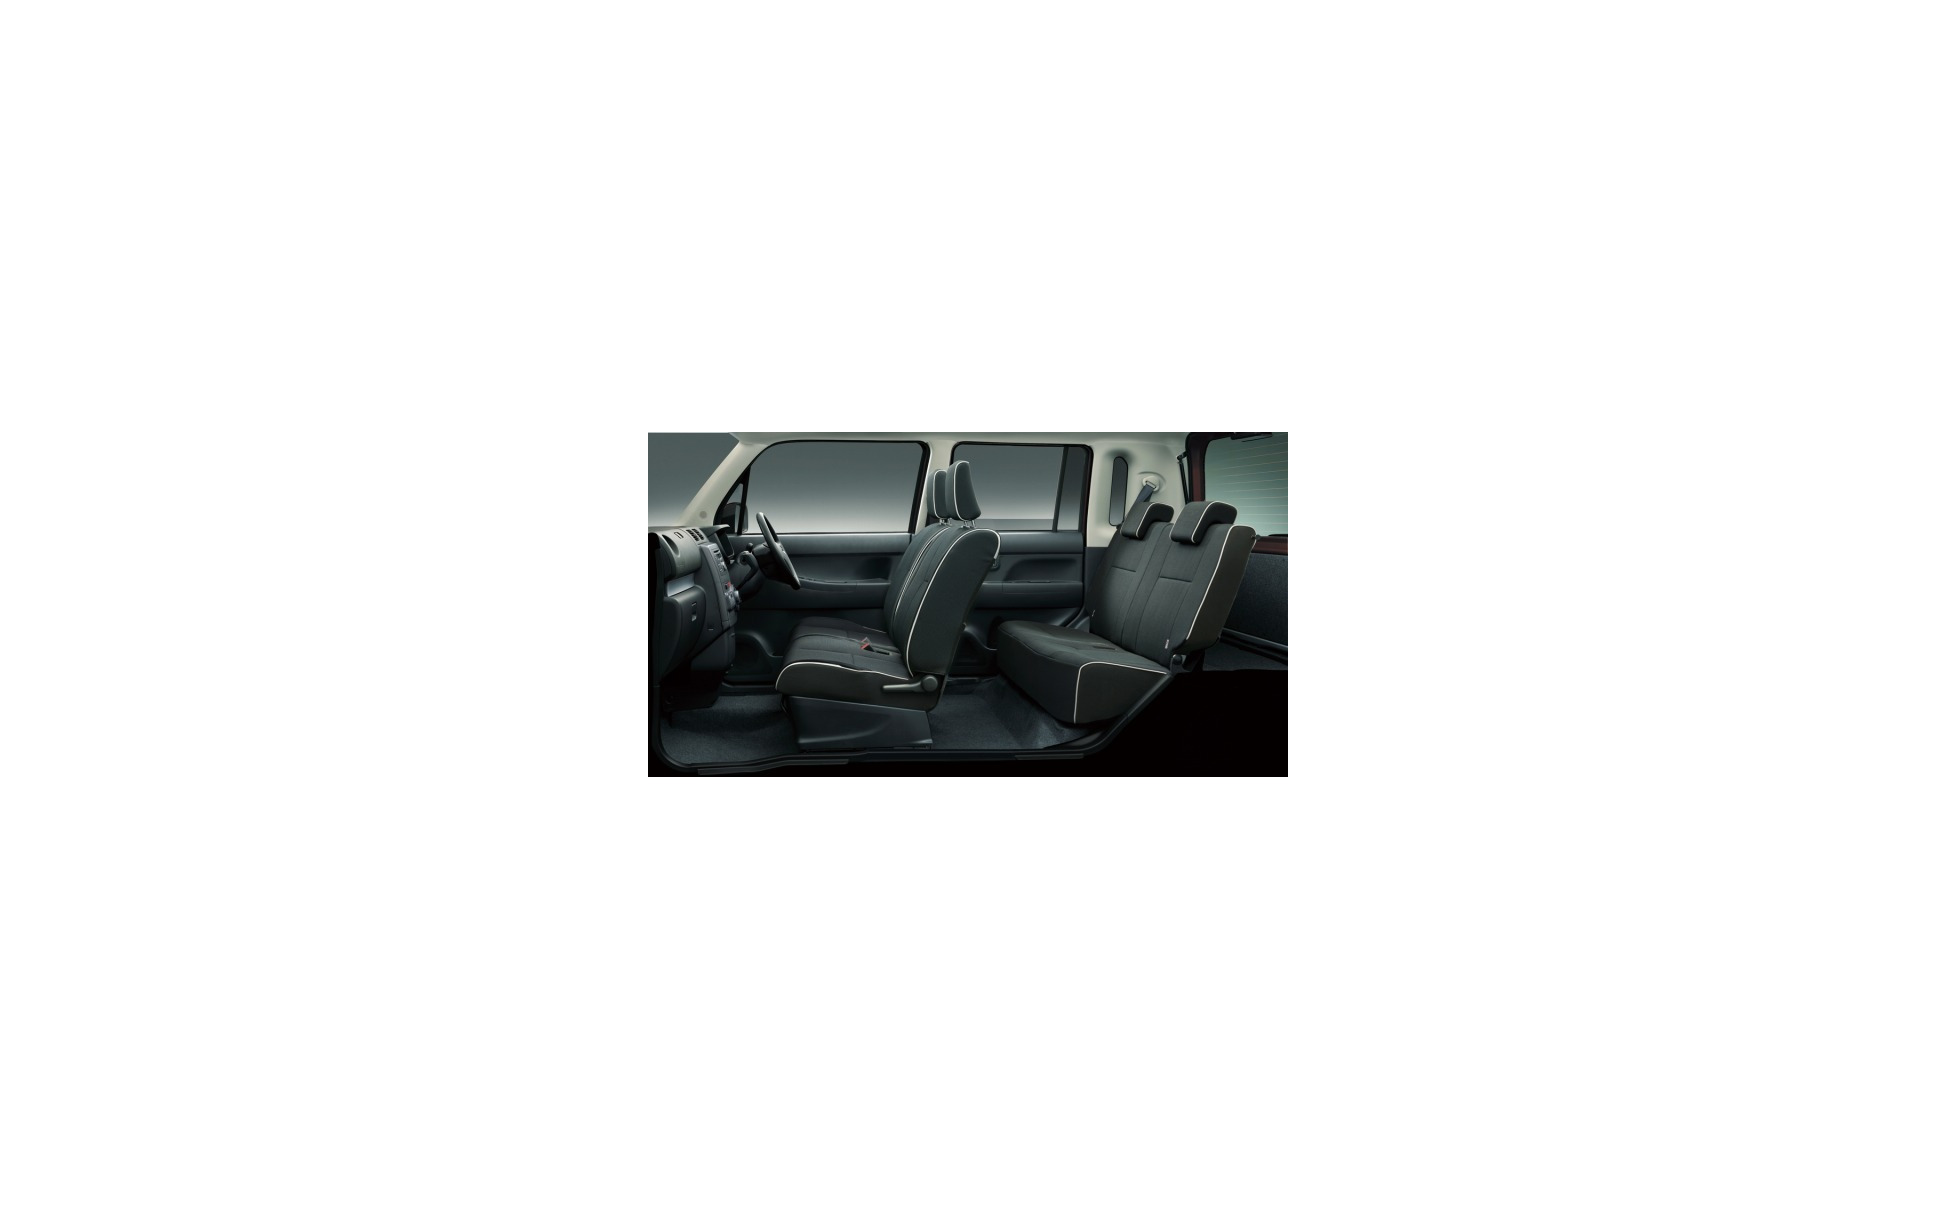 ダイハツ 特別仕様車 ムーヴ コンテ Xリミテッド 女性向け装備充実 2枚目の写真 画像 レスポンス Response Jp